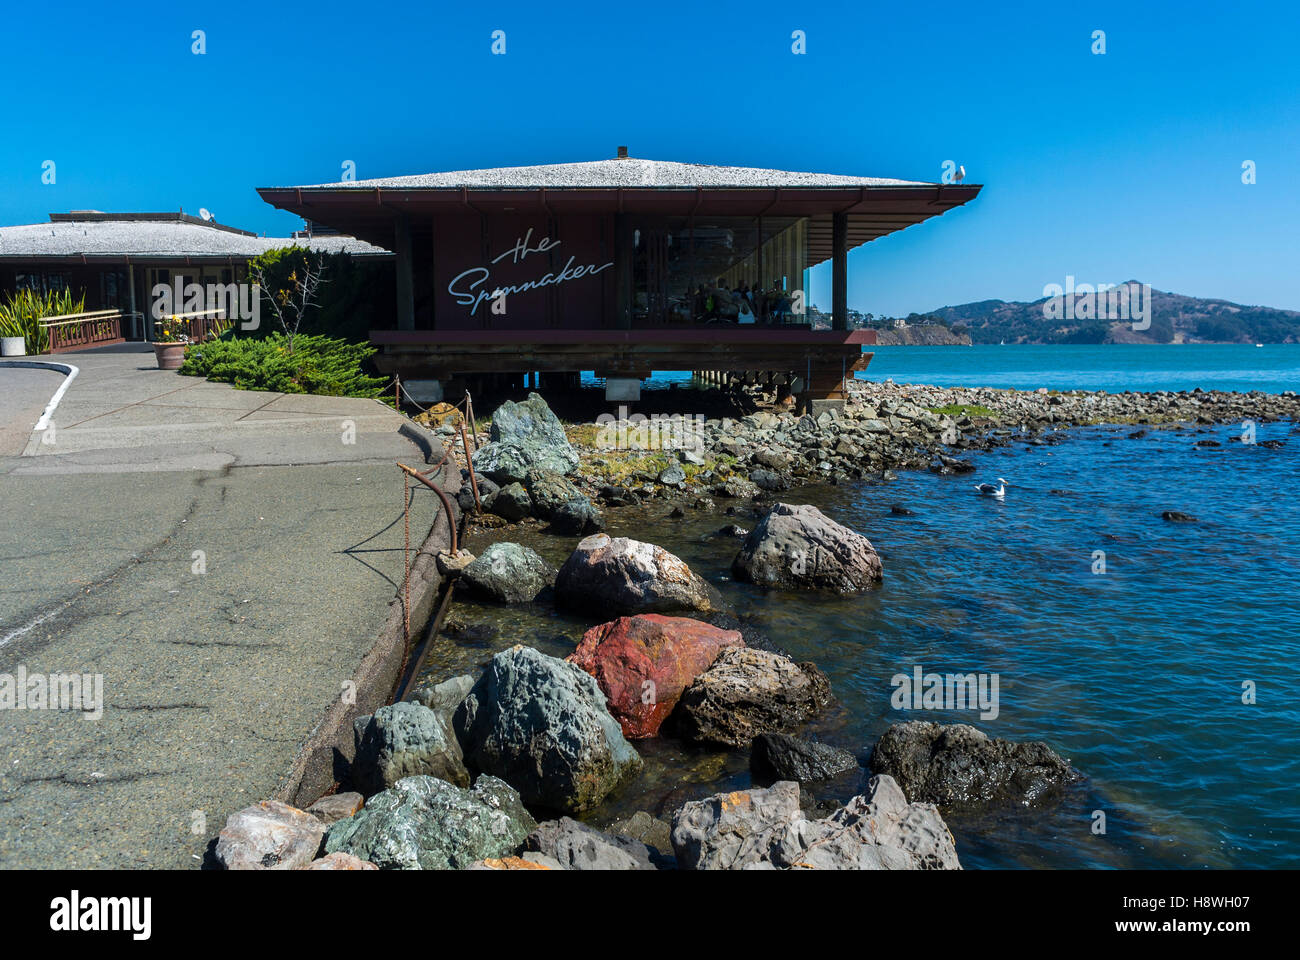 Sausalito, CA, USA, San Francisco Bay, banlieue californienne au bord de l'eau, restaurant de fruits de mer, le spi Banque D'Images